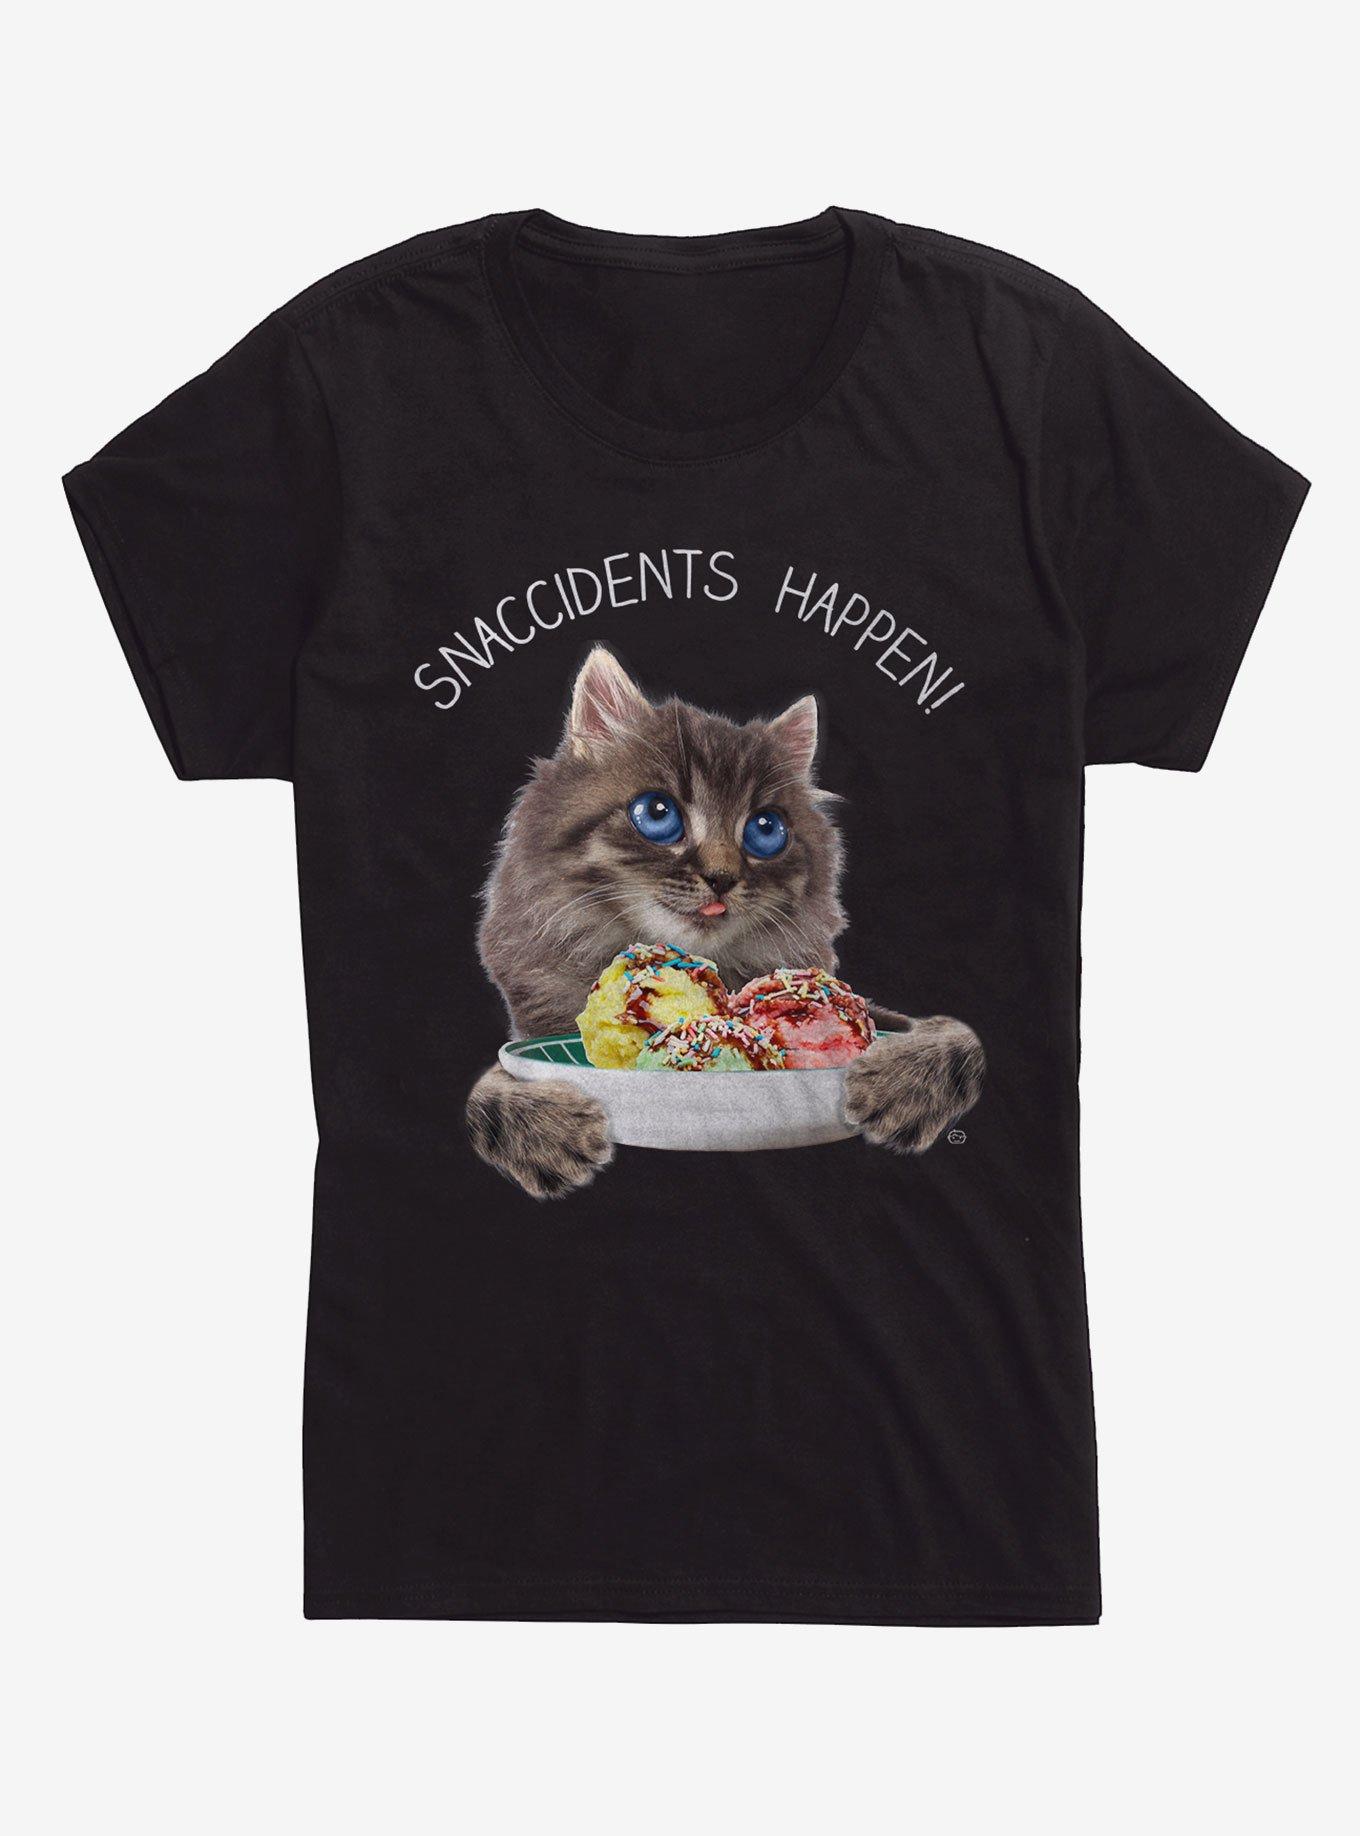 Snaccidents Happen Cat Girls T-Shirt, BLACK, hi-res